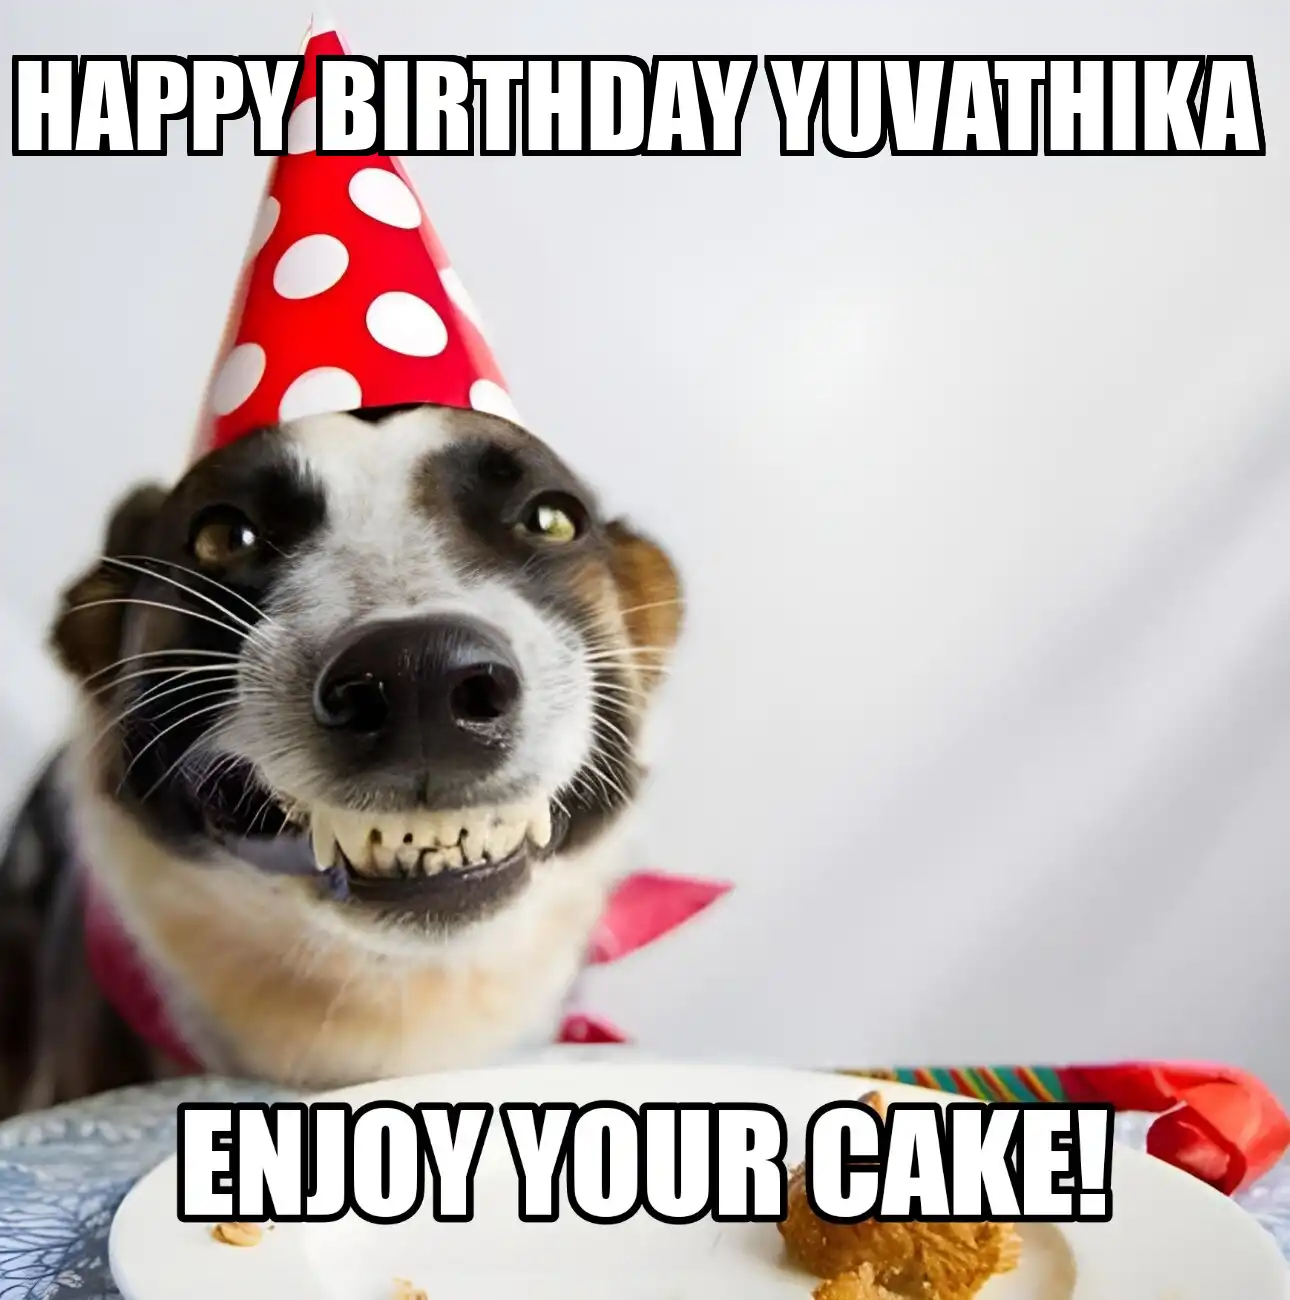 Happy Birthday Yuvathika Enjoy Your Cake Dog Meme